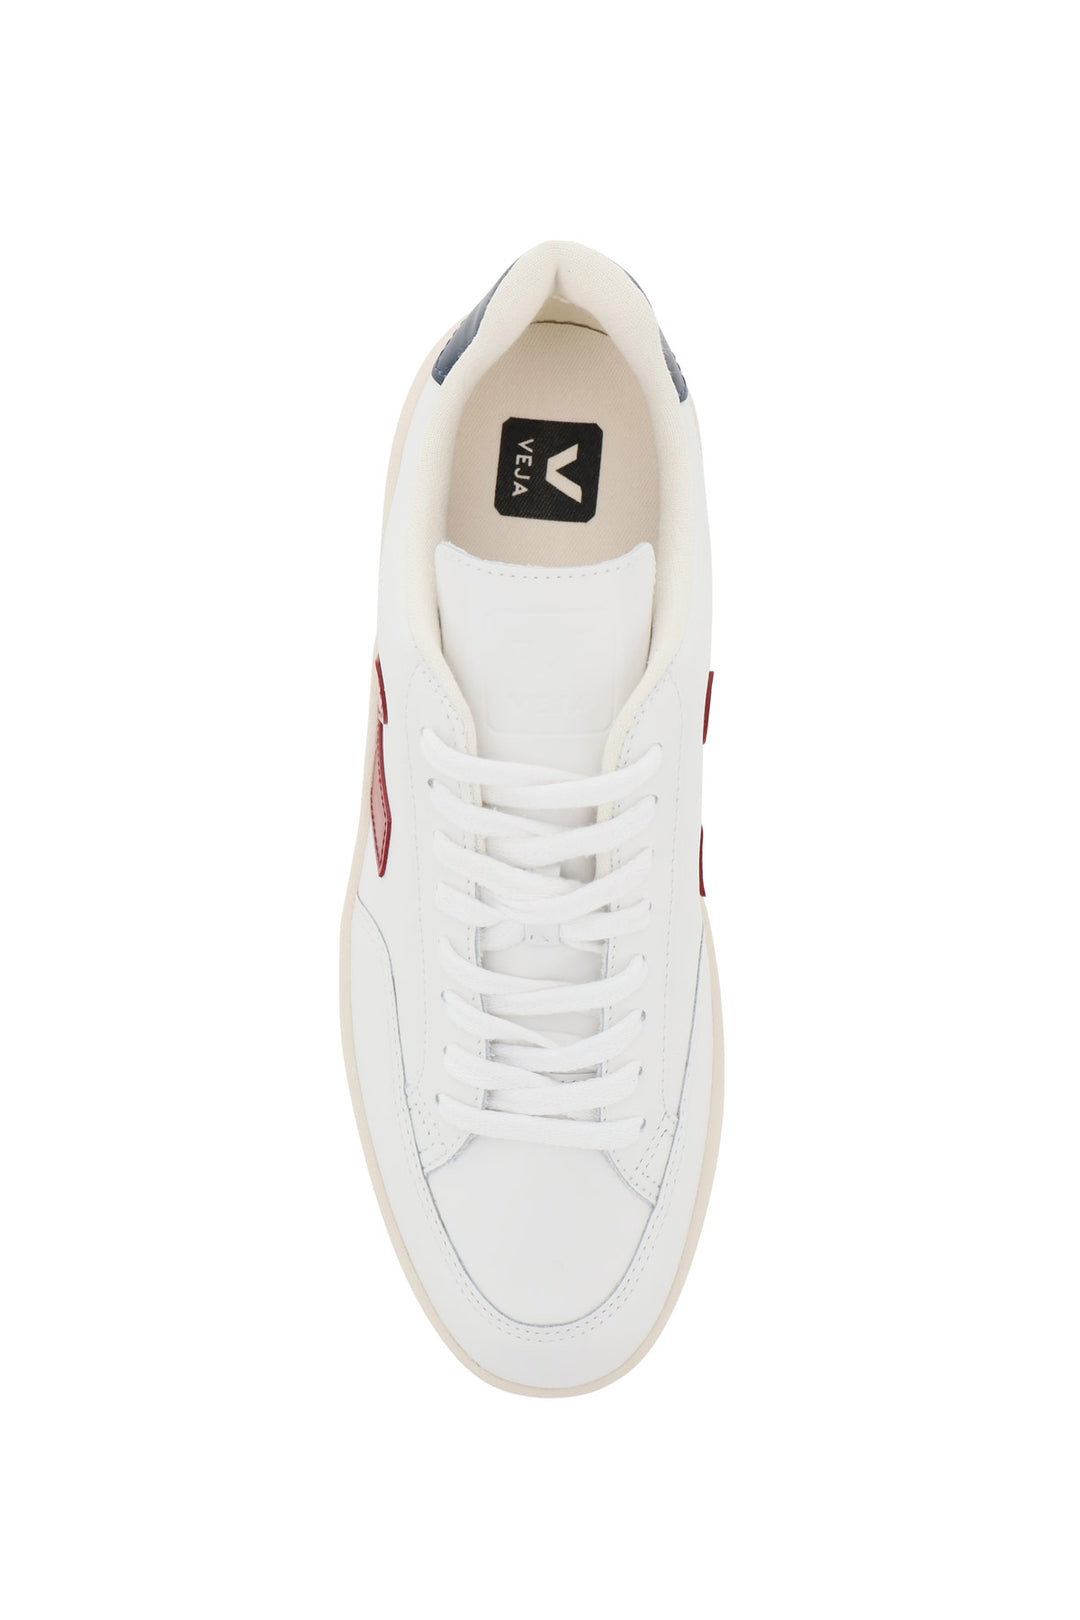 Veja V 12 Leather Sneakers   Bianco